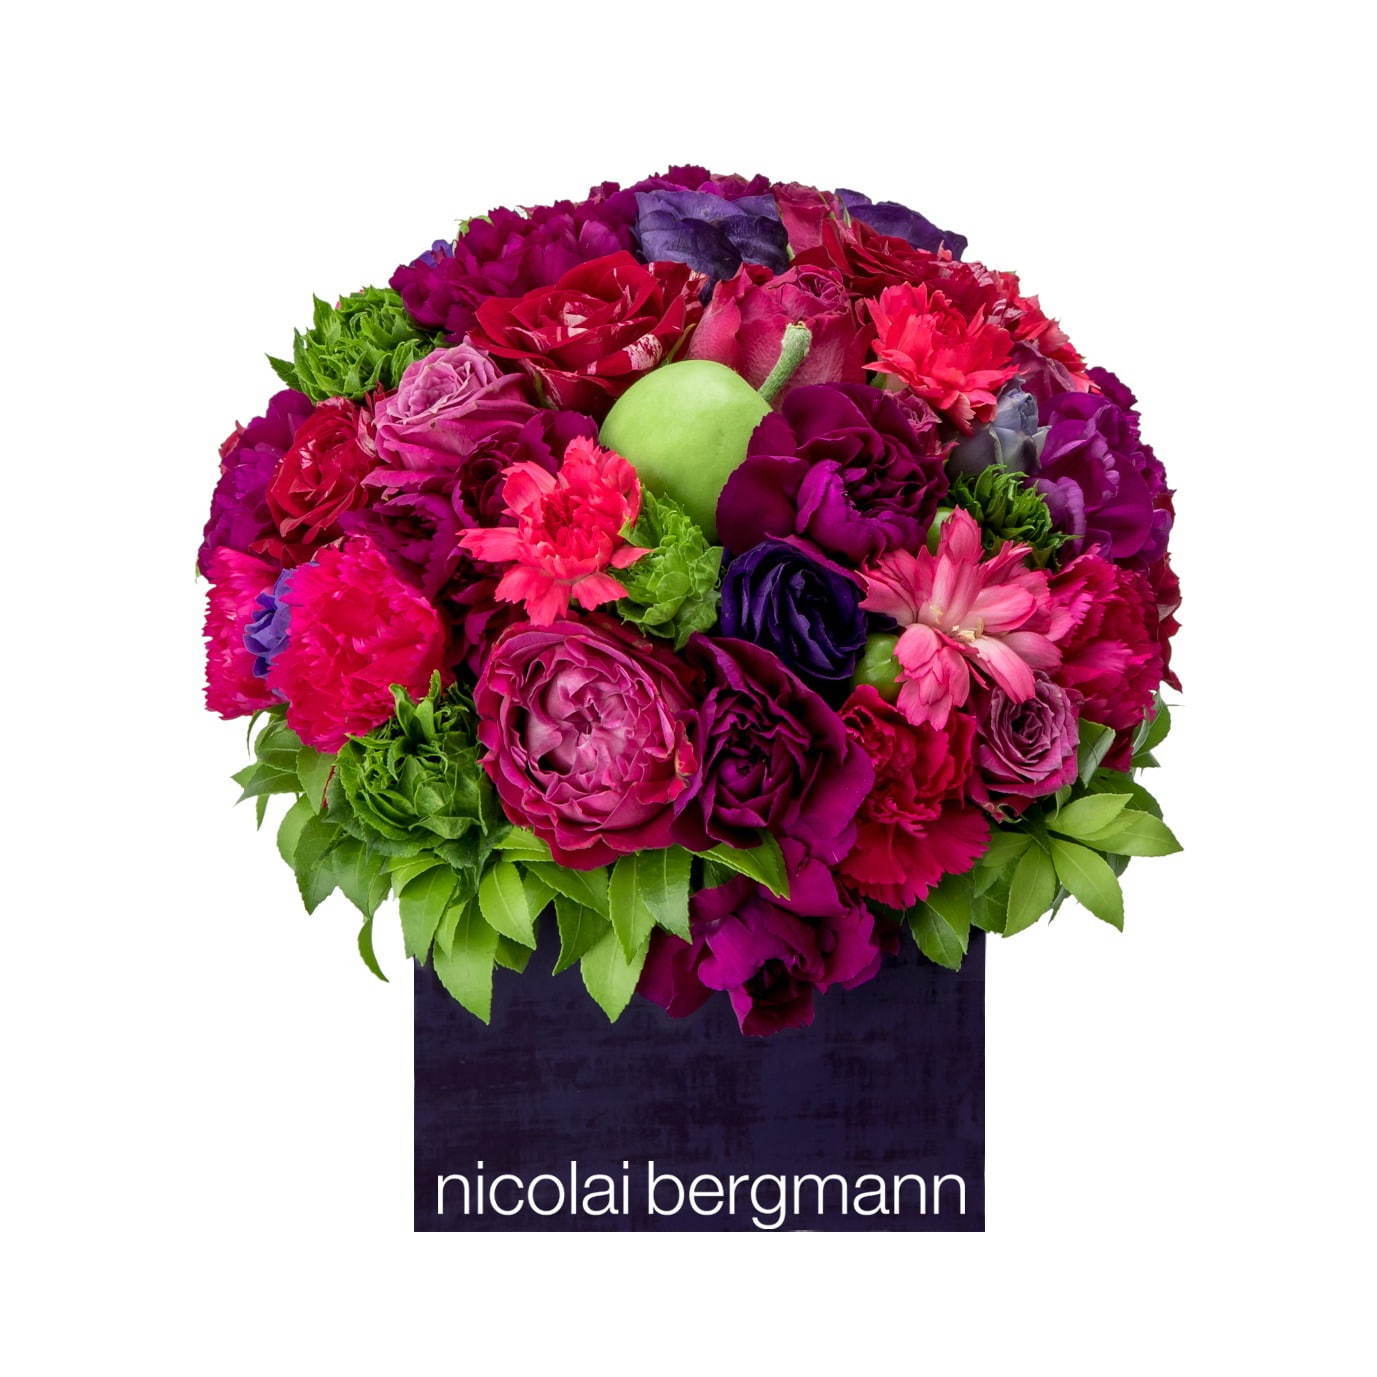 ニコライ バーグマンの秋限定フラワーボックス、紫の花やヒメリンゴで“実りの秋”を表現 | 写真